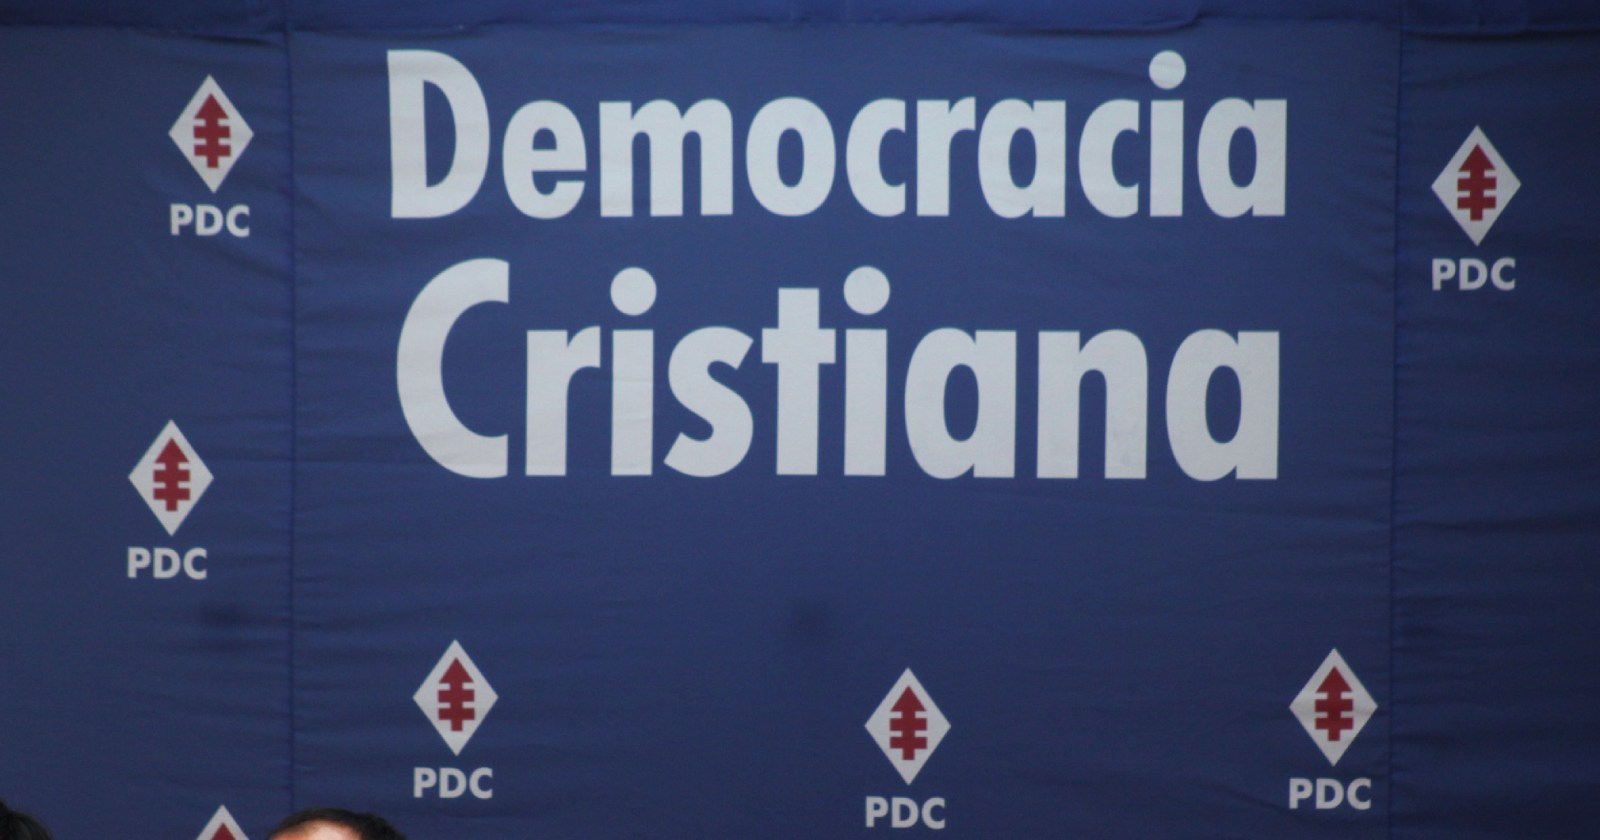 DC Democracia Cristiana